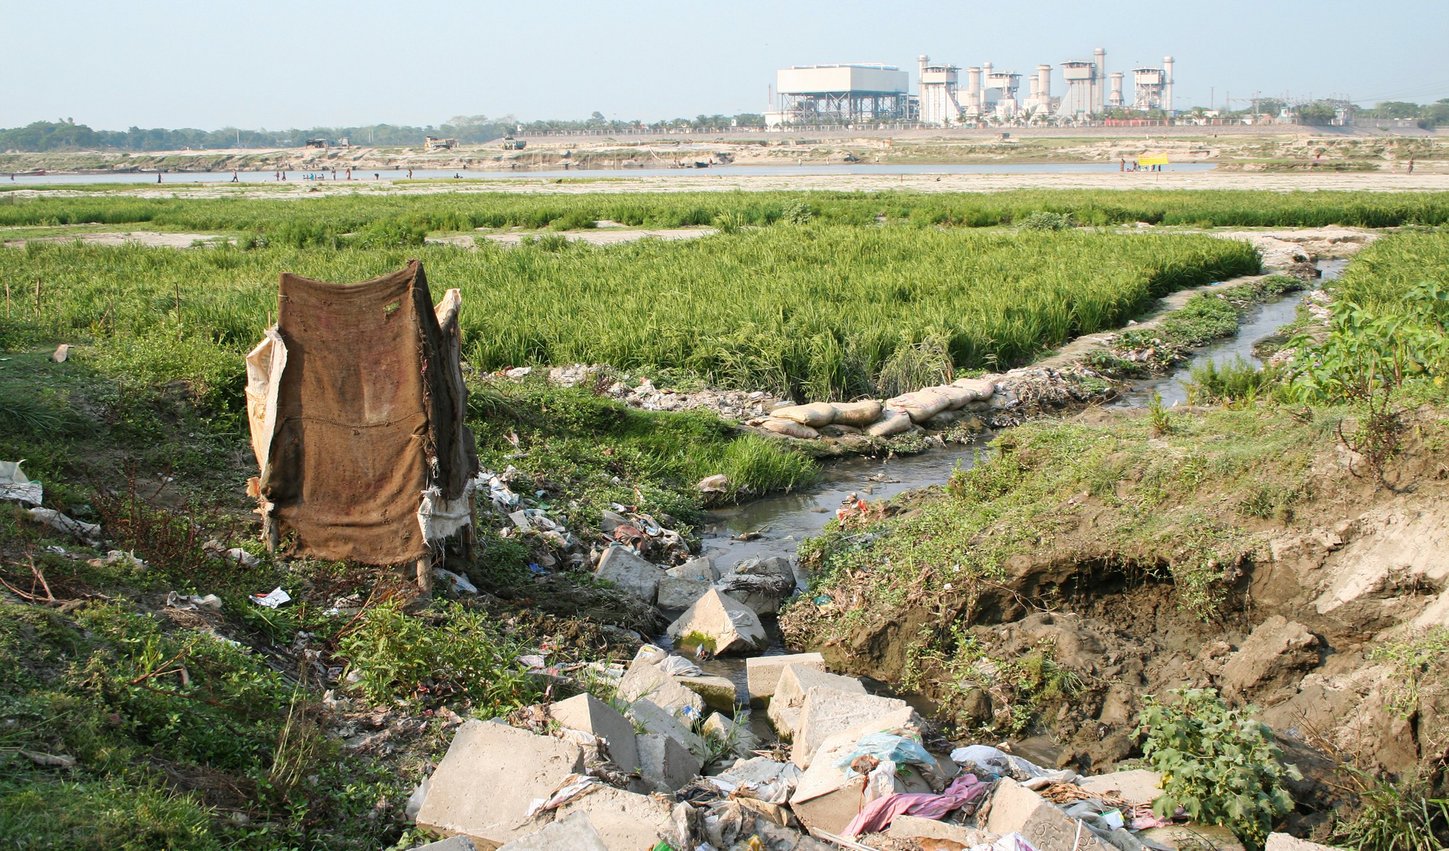 An einem kleine Bach auf einer grünen Wiese liegt viel Müll. Im Hintergrund sind an einem Fluss Menschen zu sehen.